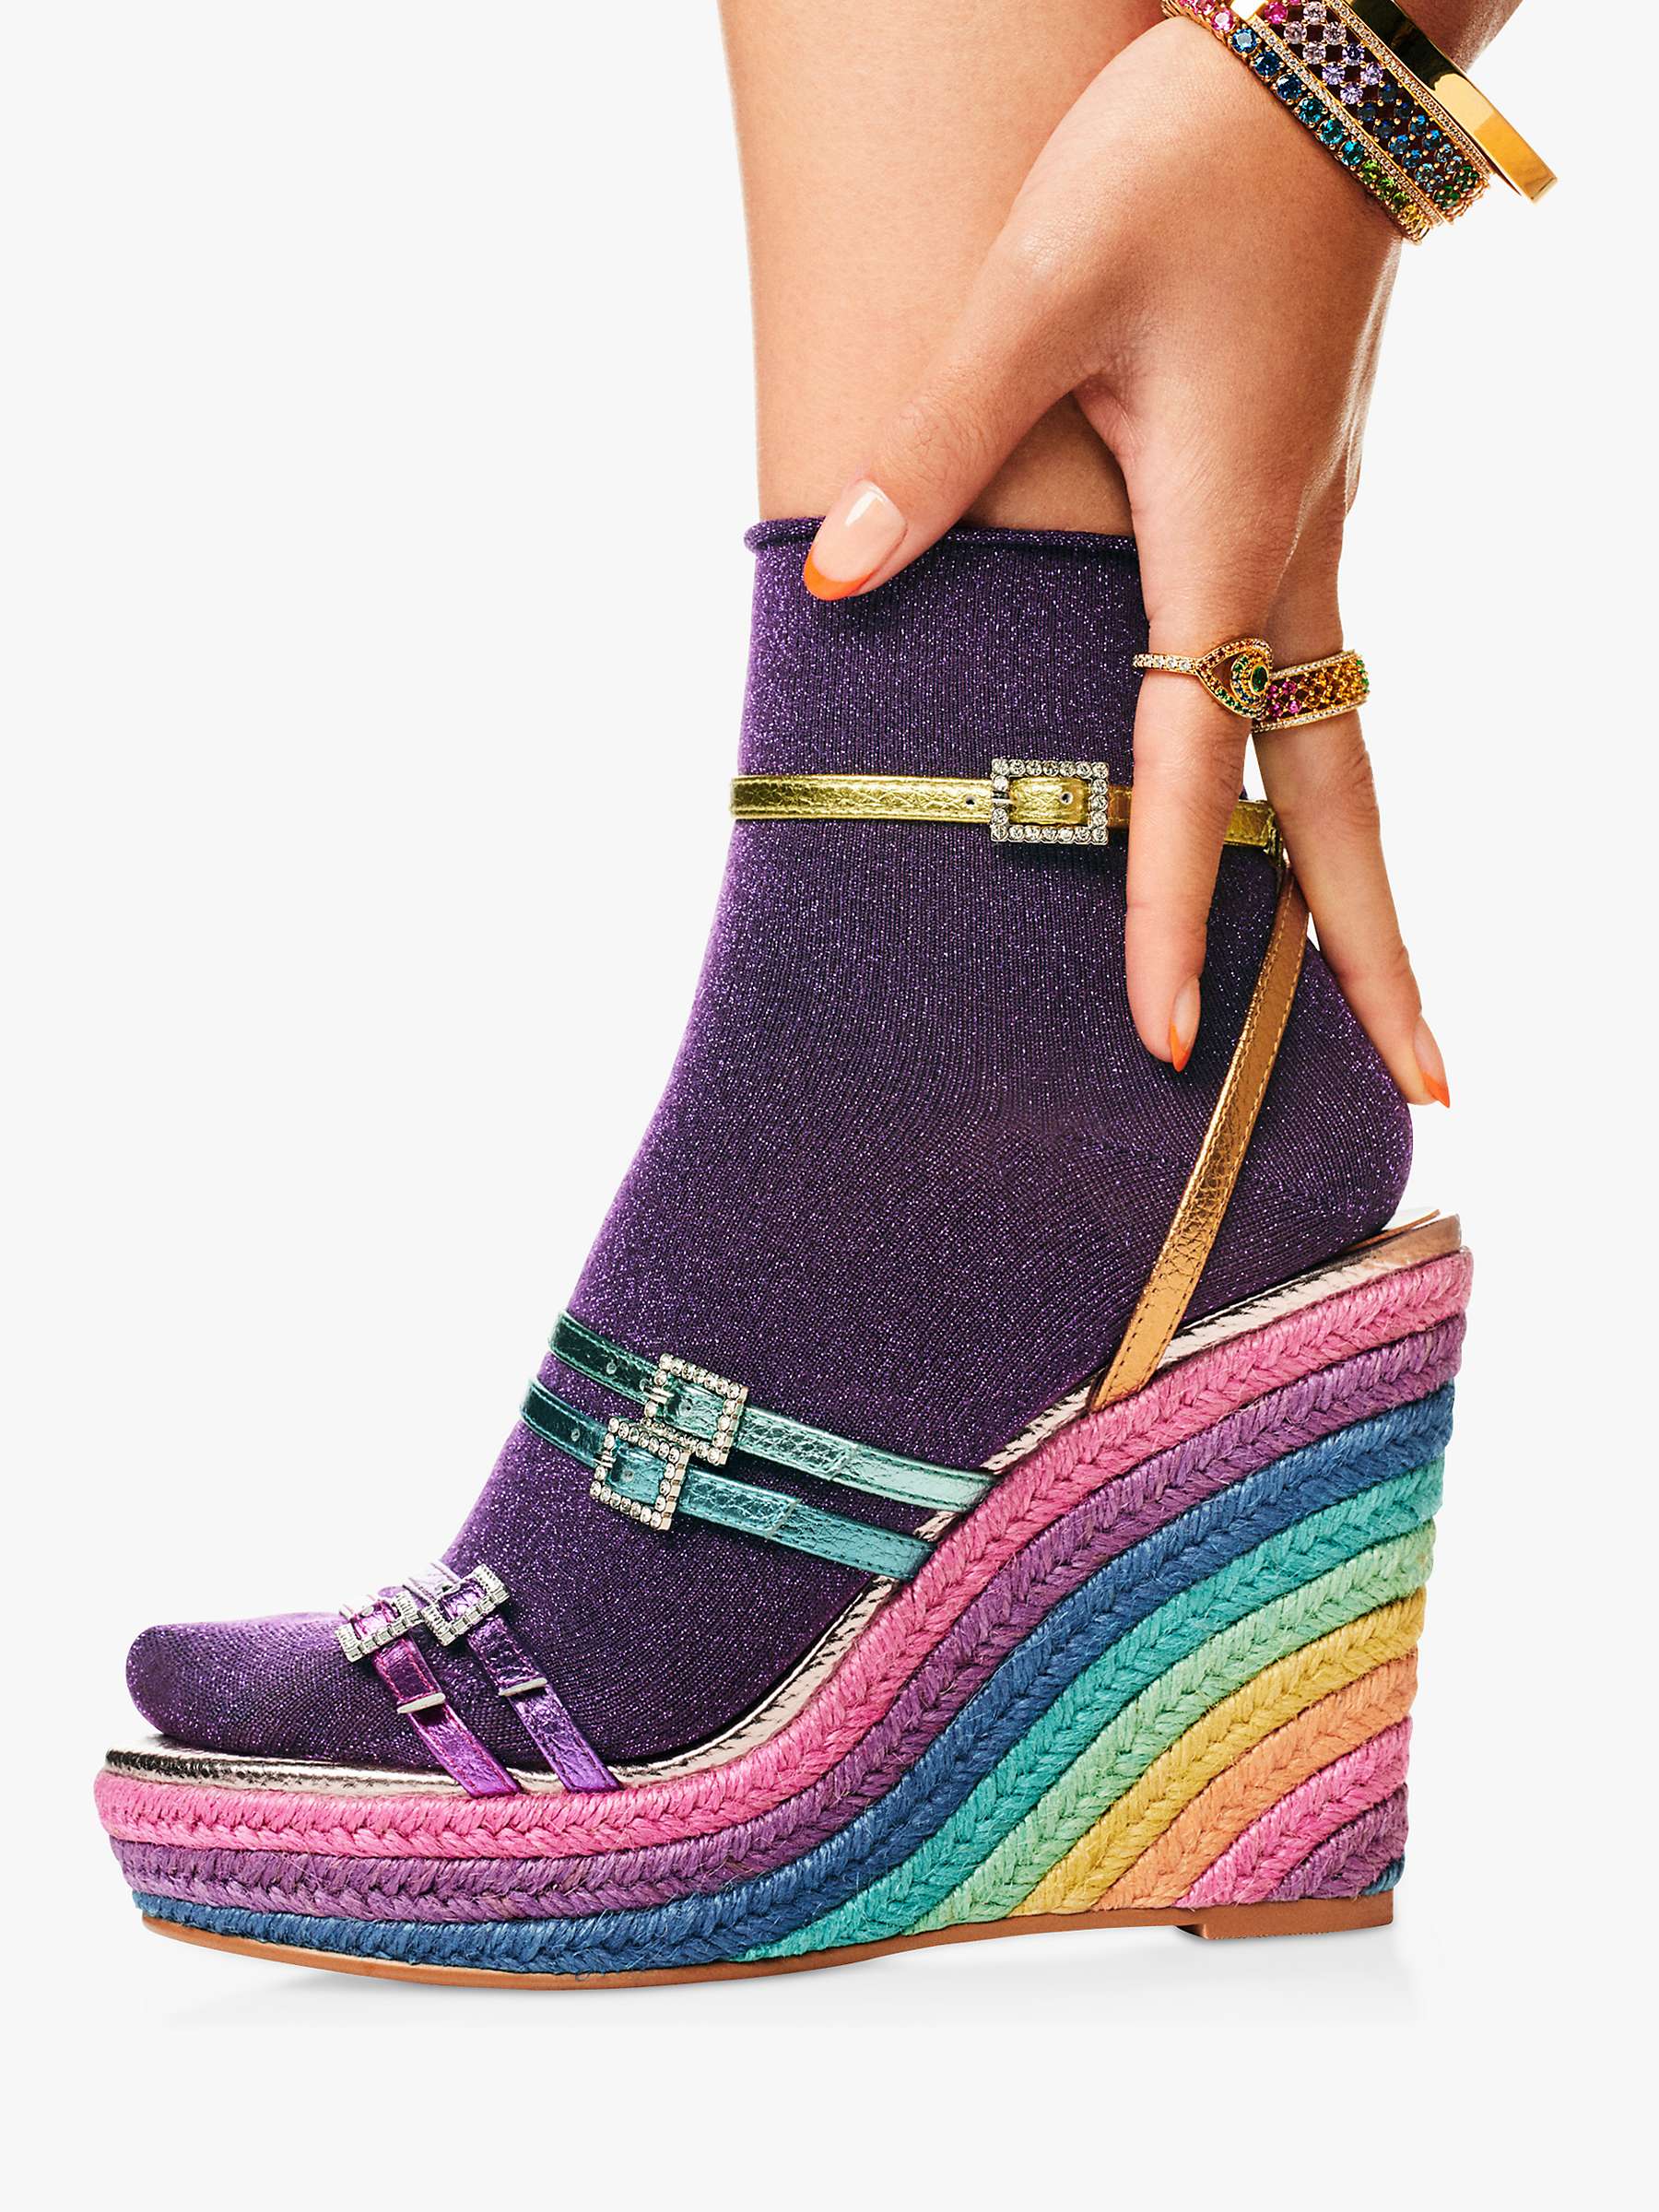 Buy Kurt Geiger London Pierra Wedge Heel Sandals, Multi Online at johnlewis.com